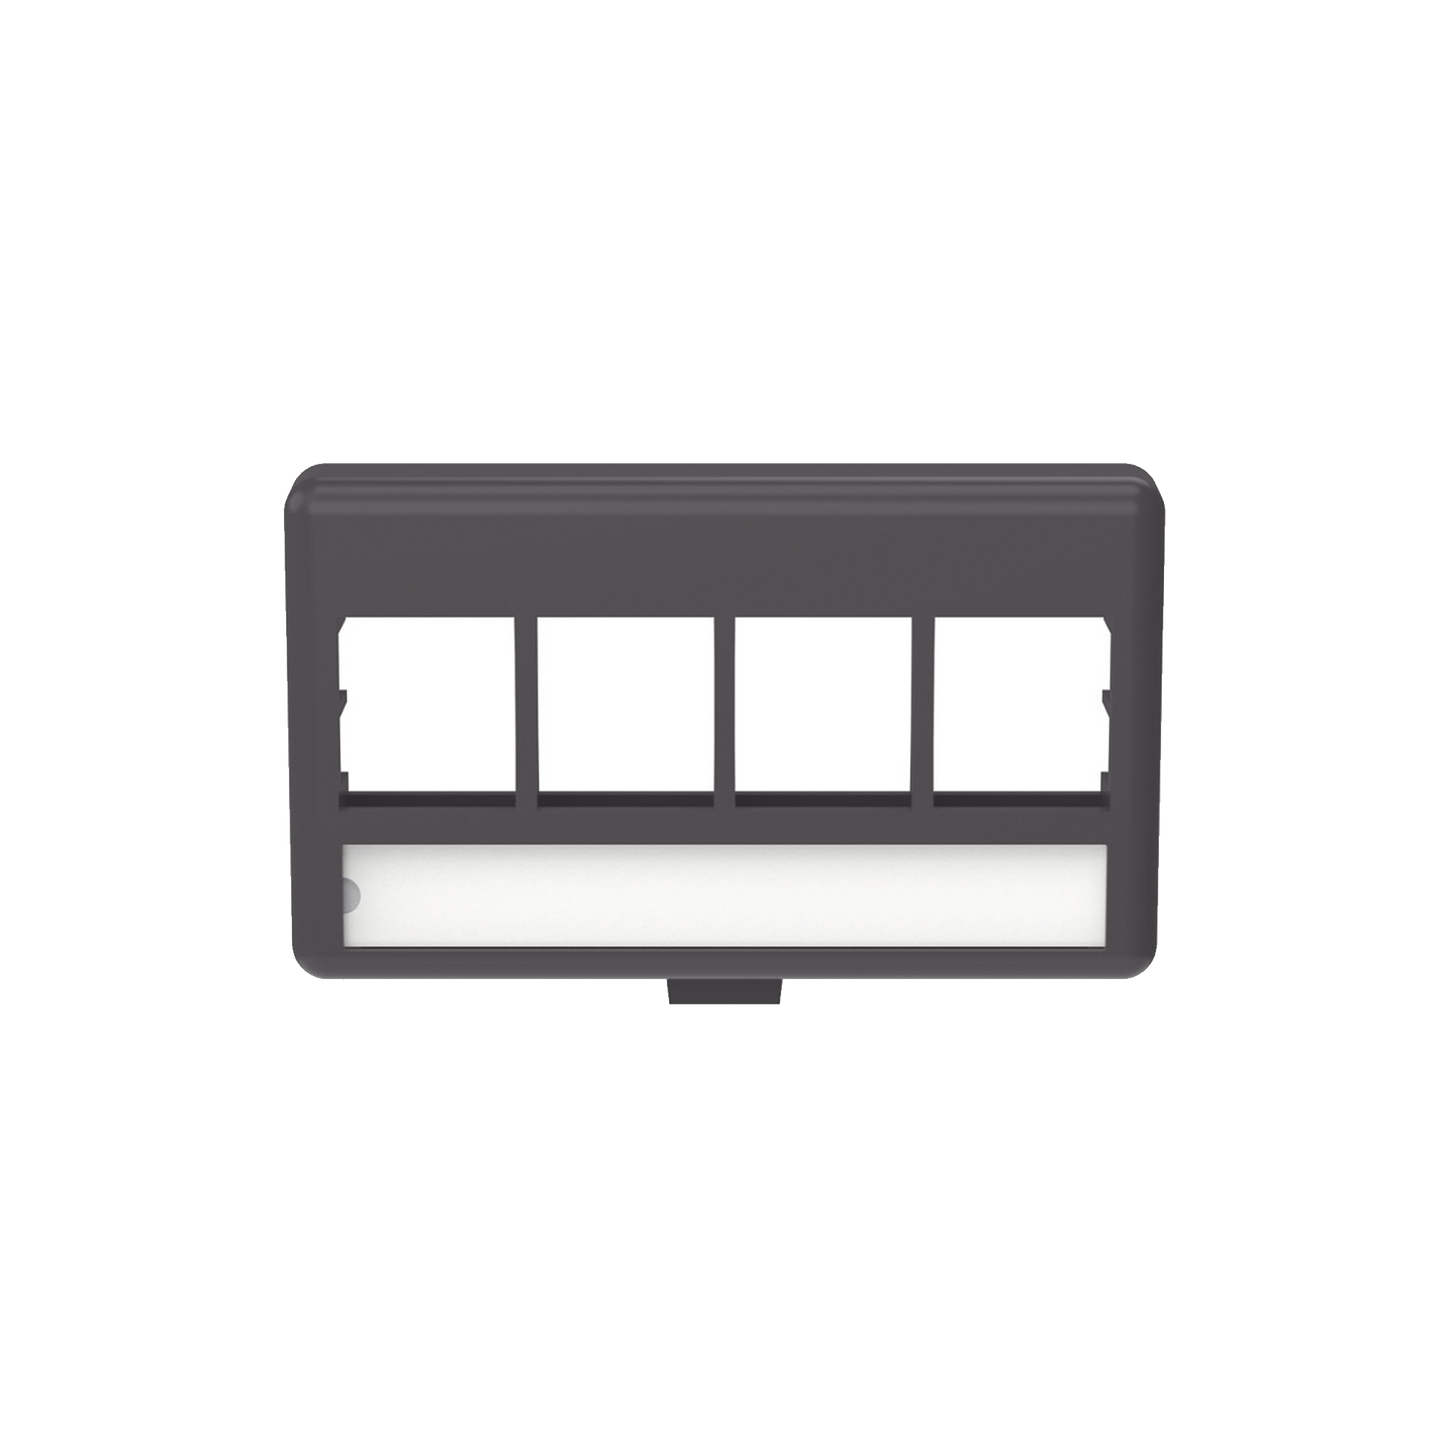 Placa de Mobiliario Modular Estándar, Salidas Para 4 Puertos Keystone, Color Negro